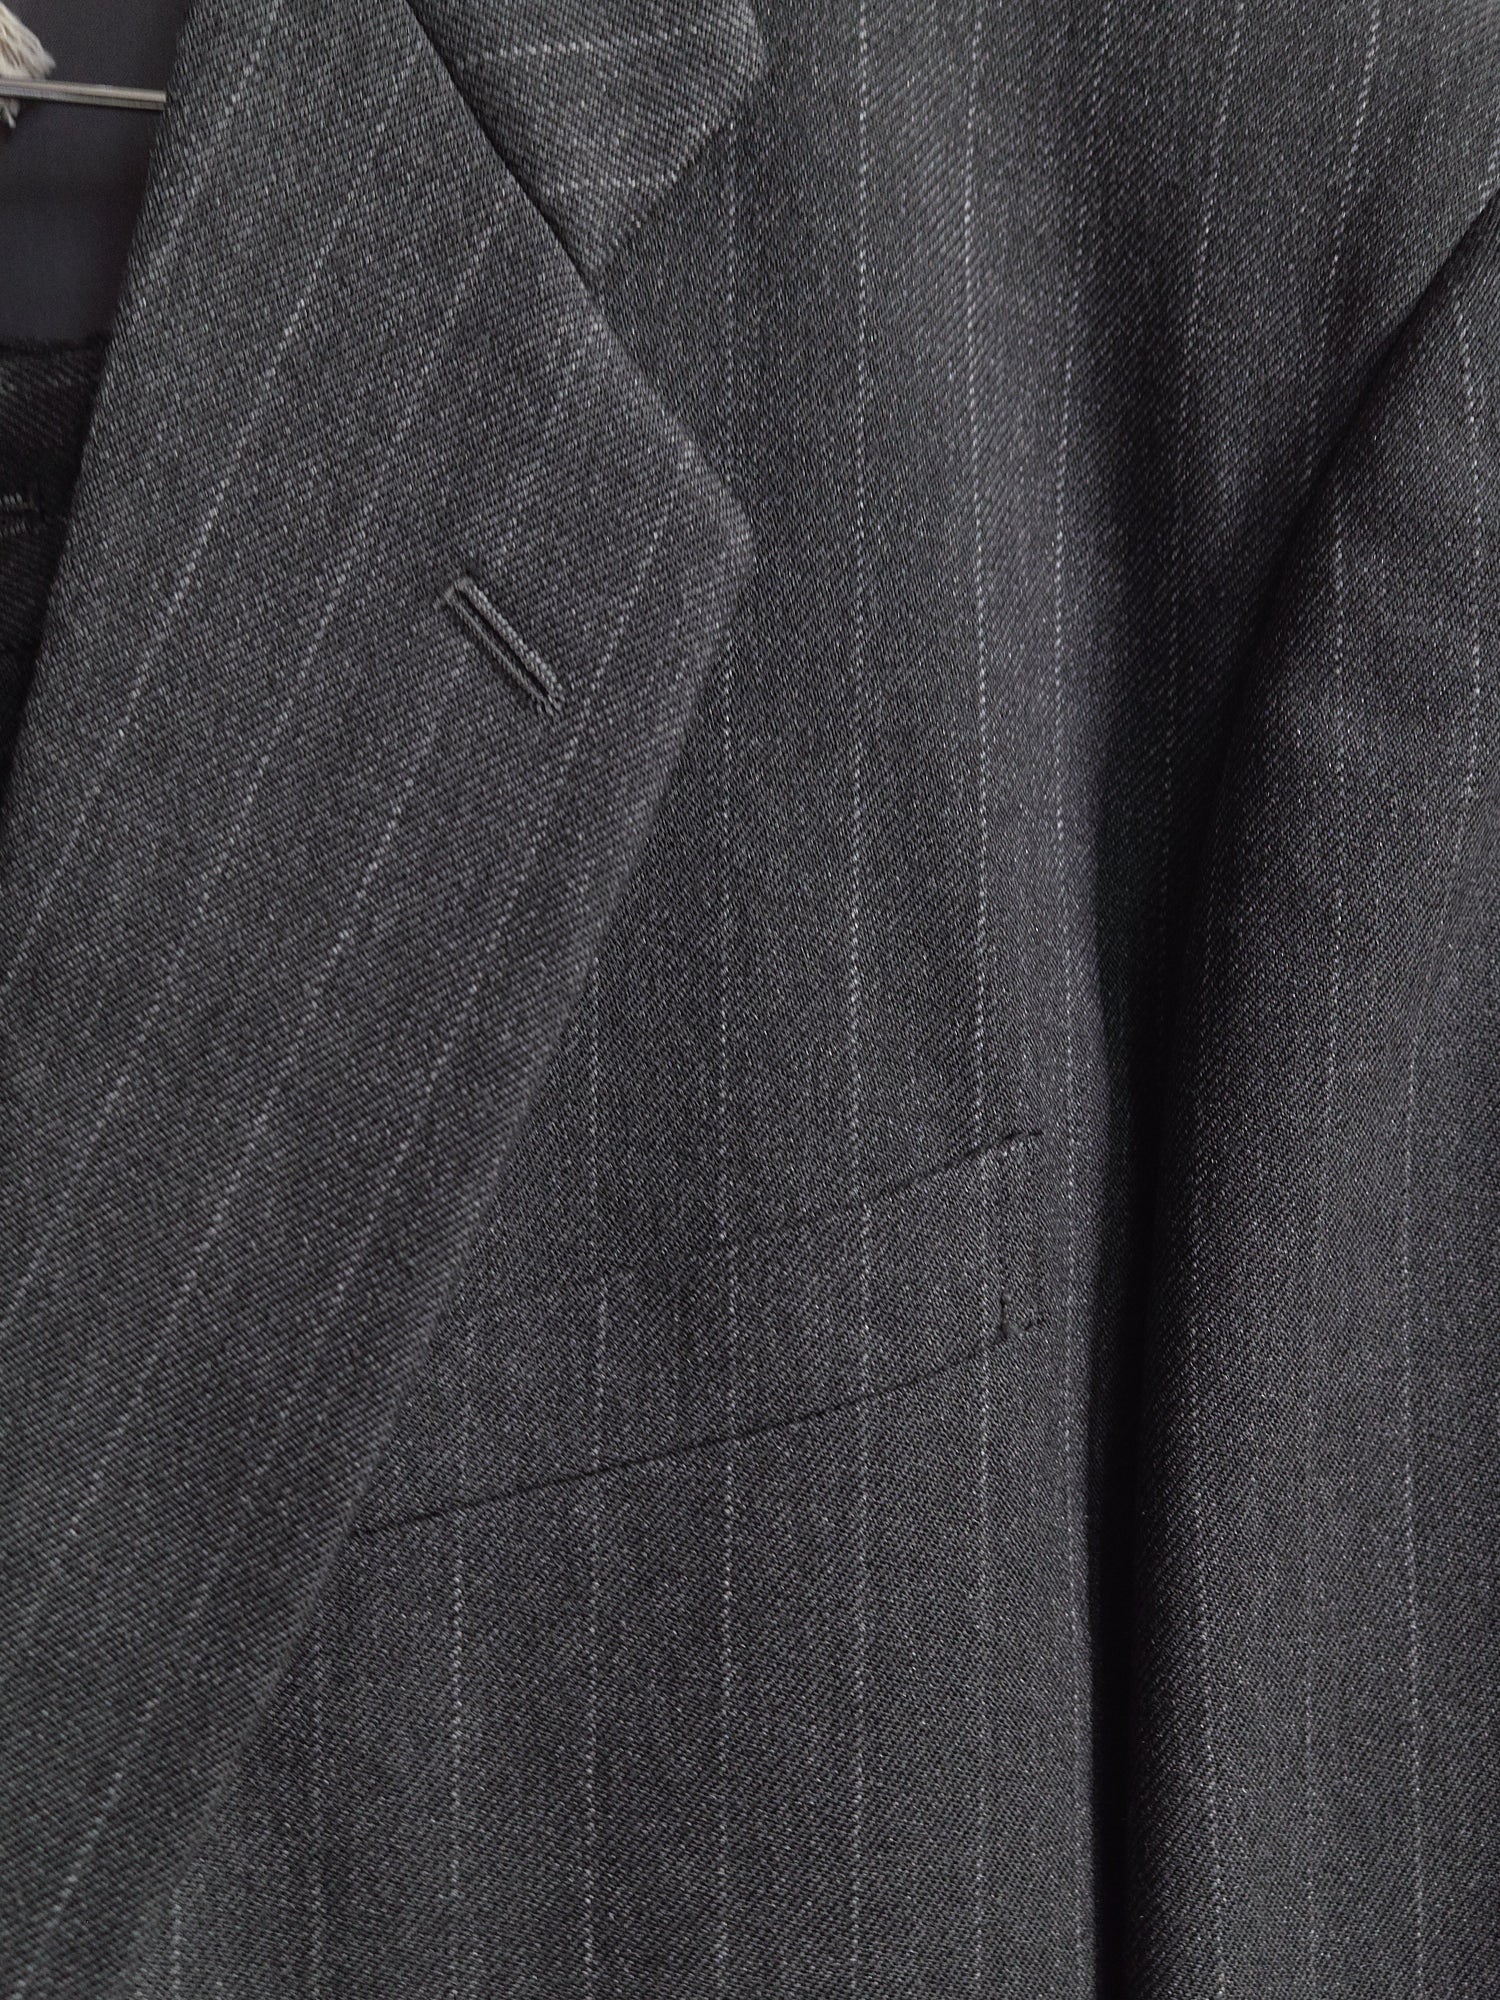 Comme des Garcons Homme Plus 1990 grey wool stripe 2 button suit - mens S